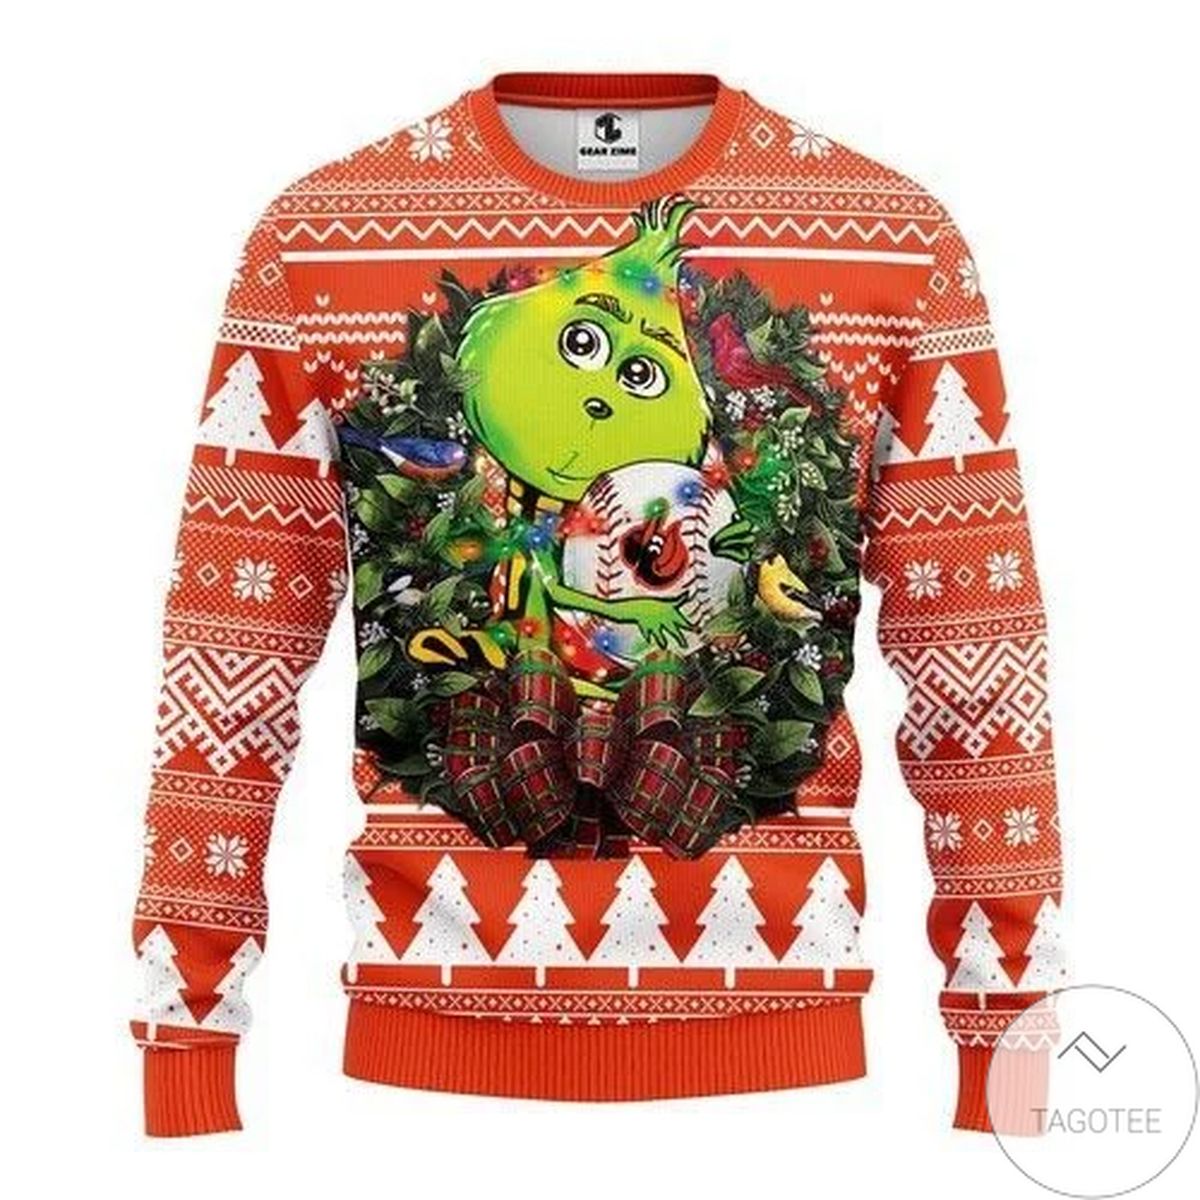 Mlb Baltimore Orioles Grinch Hug Ugly Christmas Sweater